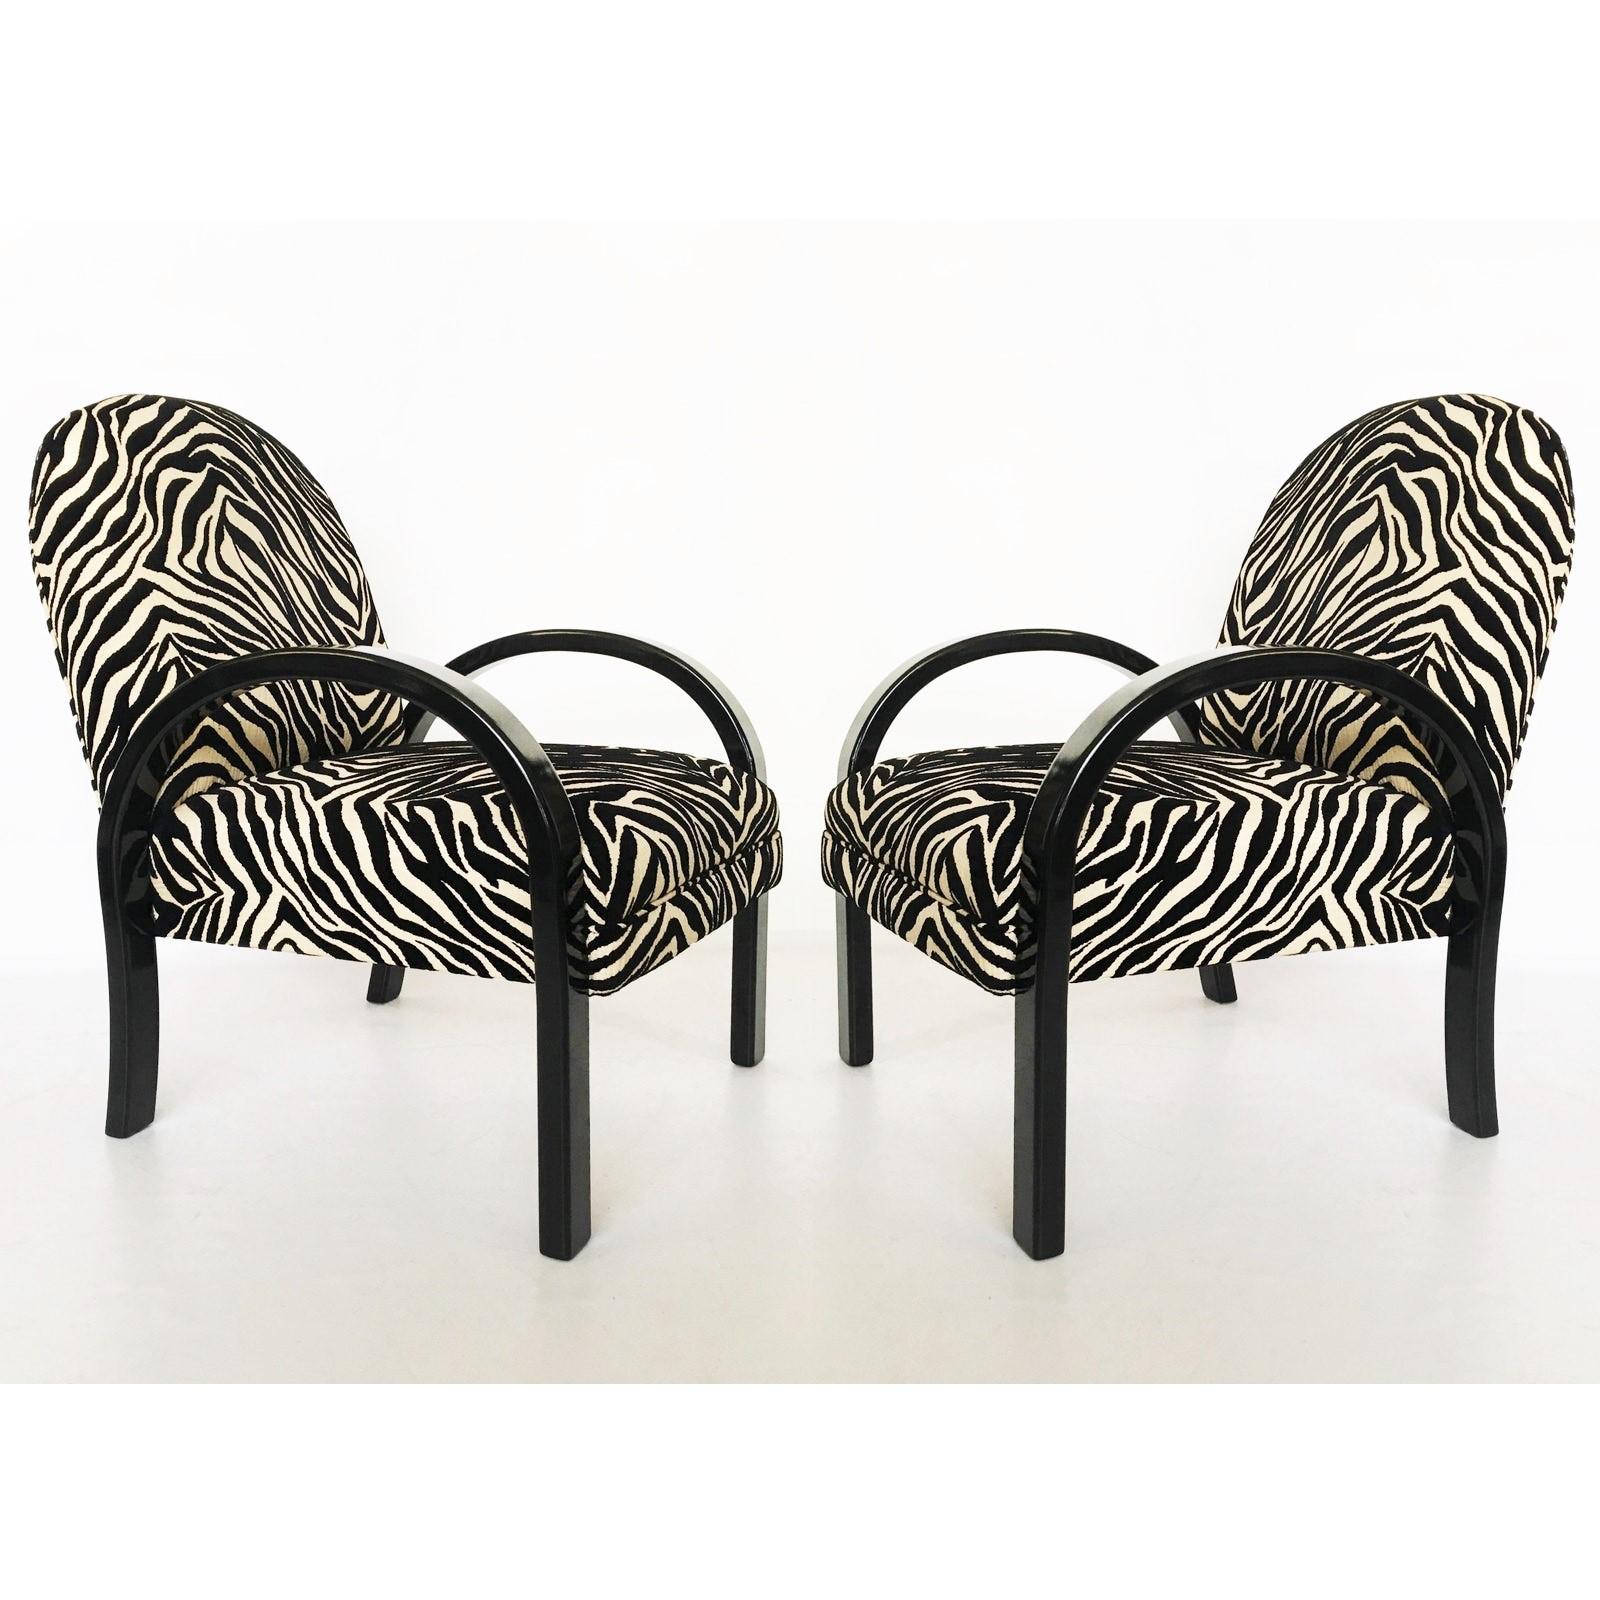 Wunderschönes Paar Art-Déco-Sessel im Stil von Jindrich Halabala. Die Konstruktion des Gestells und die scheinbar schwebenden gepolsterten Sitze verleihen den Stühlen eine skulpturale Präsenz. Mit einem schwarz lackierten Holzrahmen, der reich mit